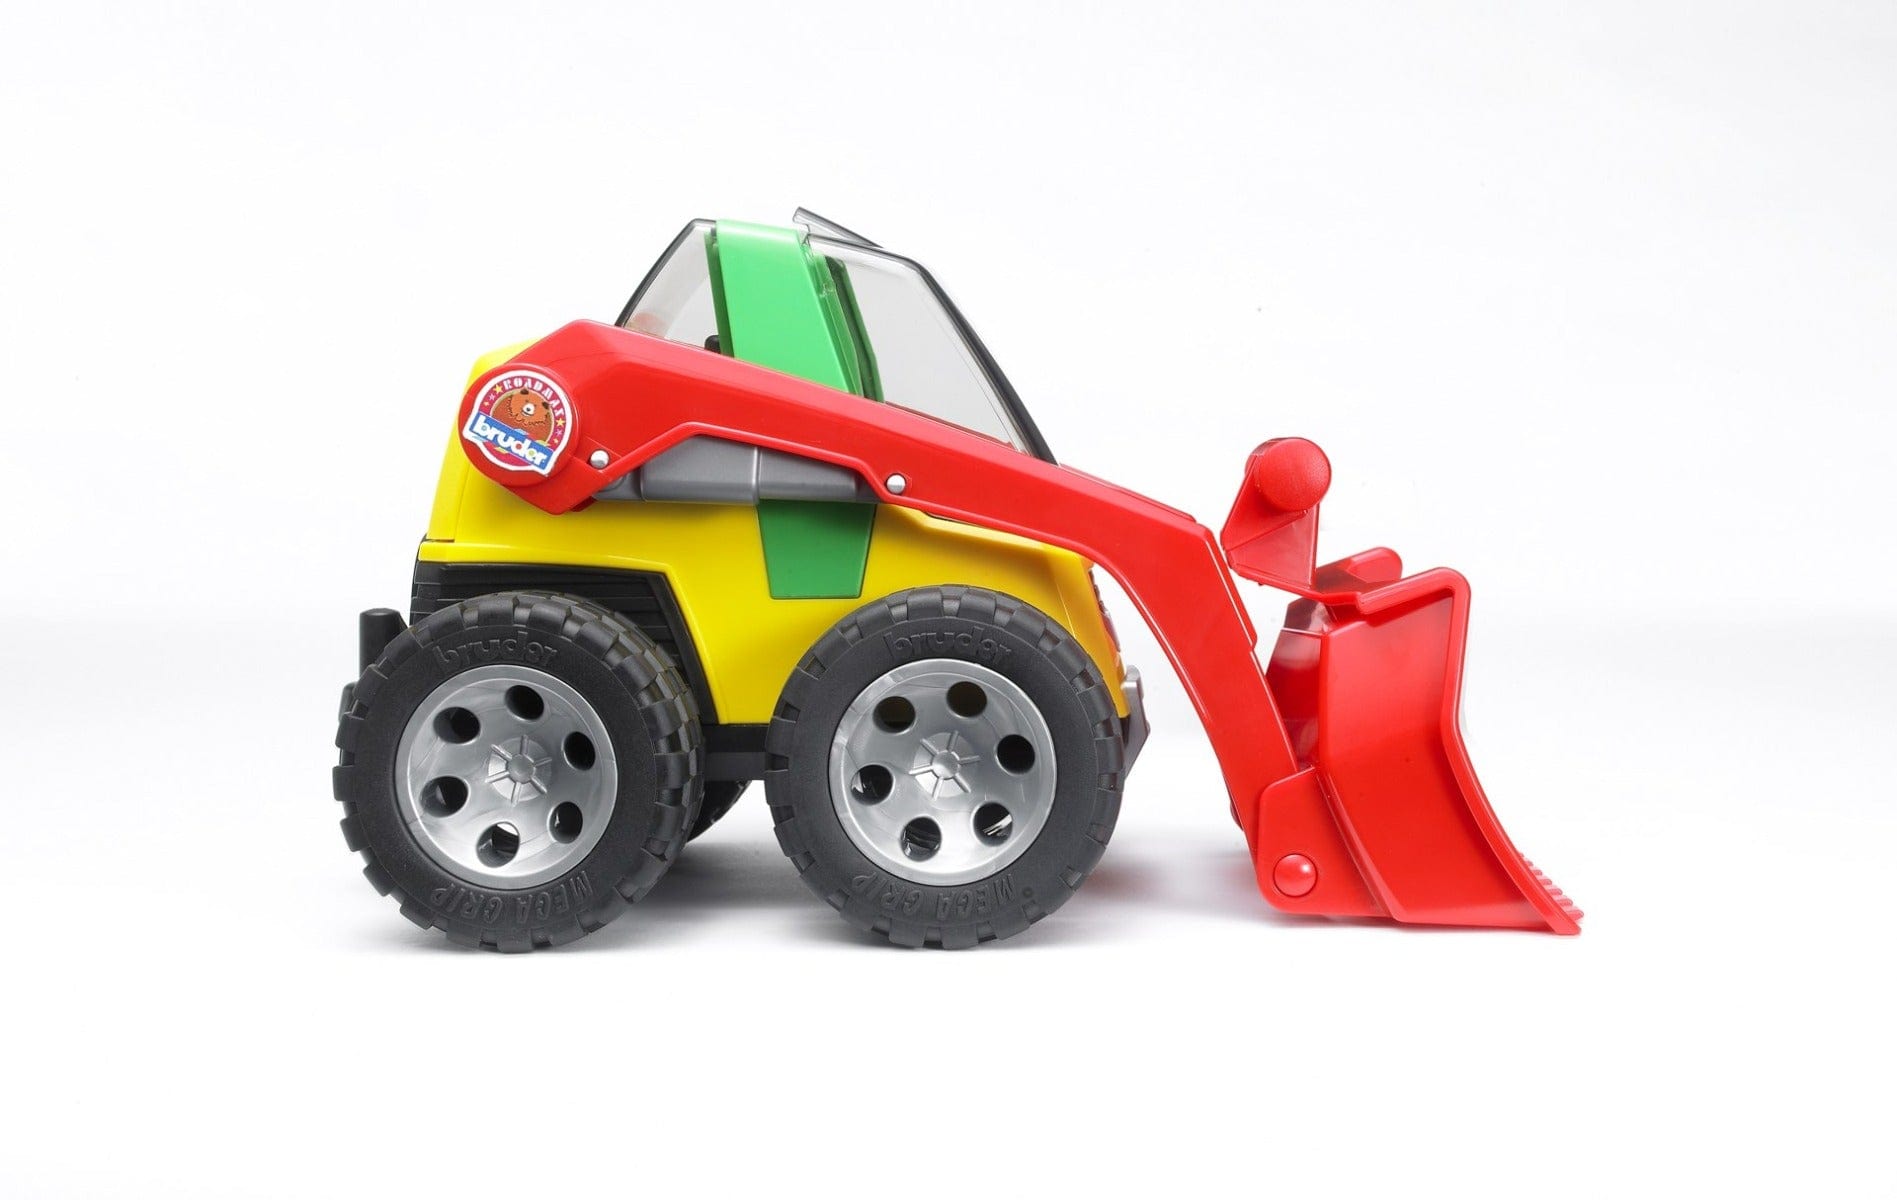 Bruder Toy Garages & Vehicles Bruder ROADMAX Skid Steer loader